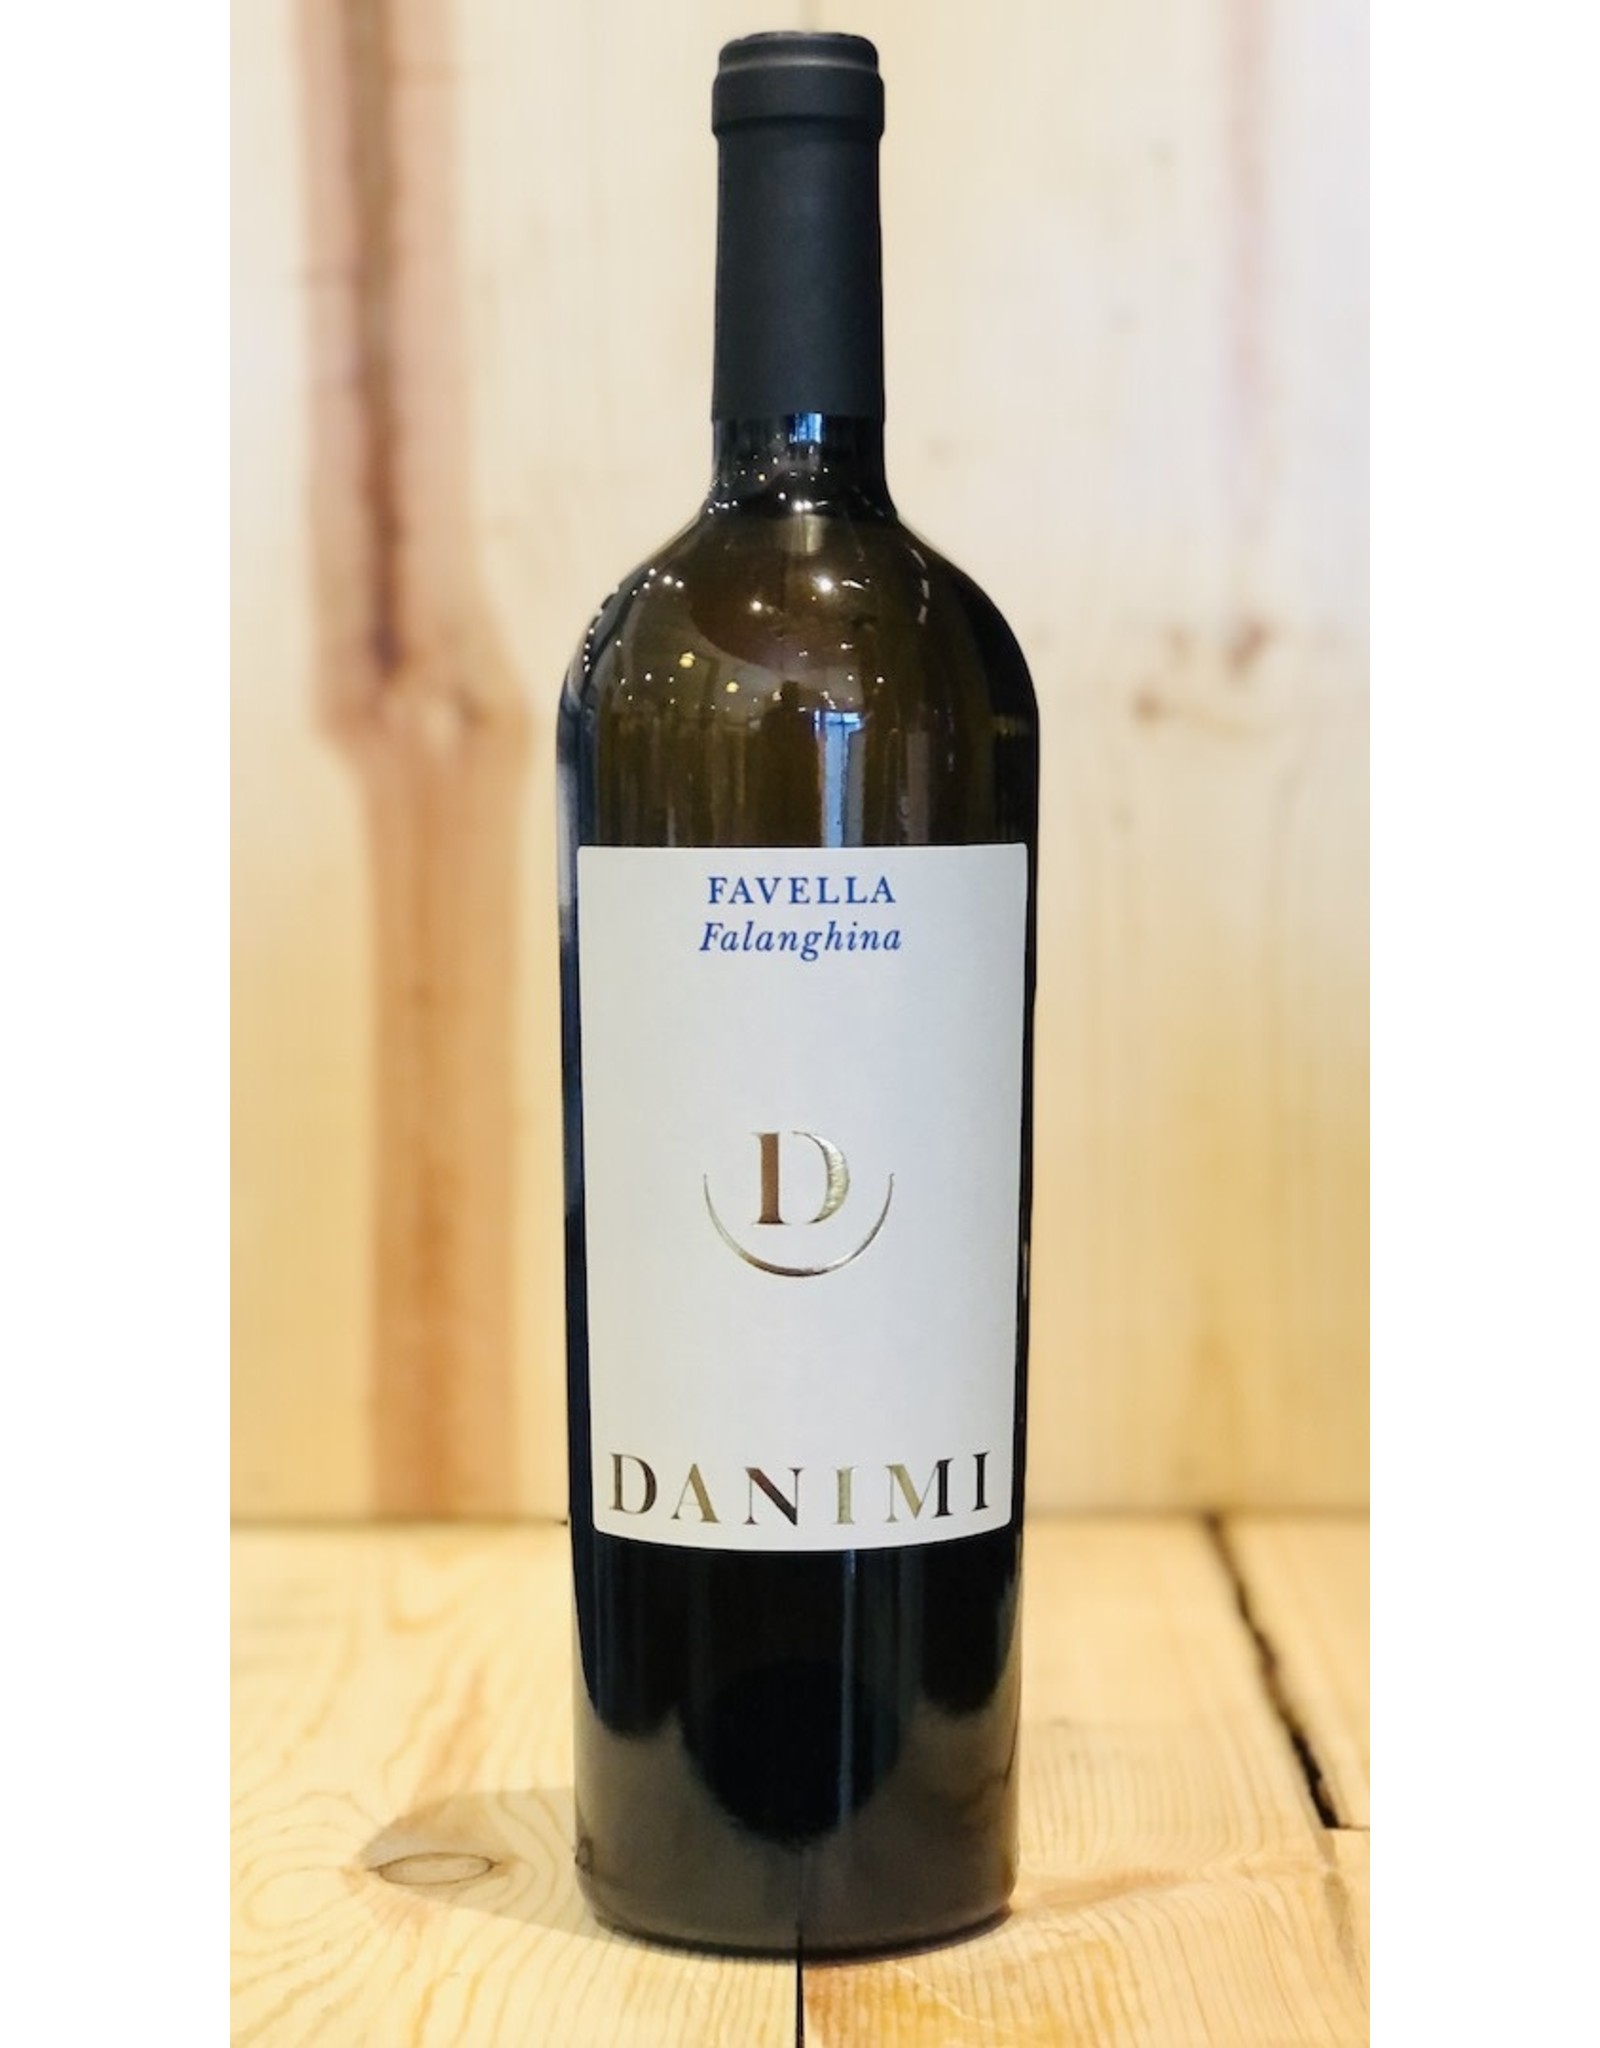 Wine Urciuolo Danimi 'Favellla' Falanghina